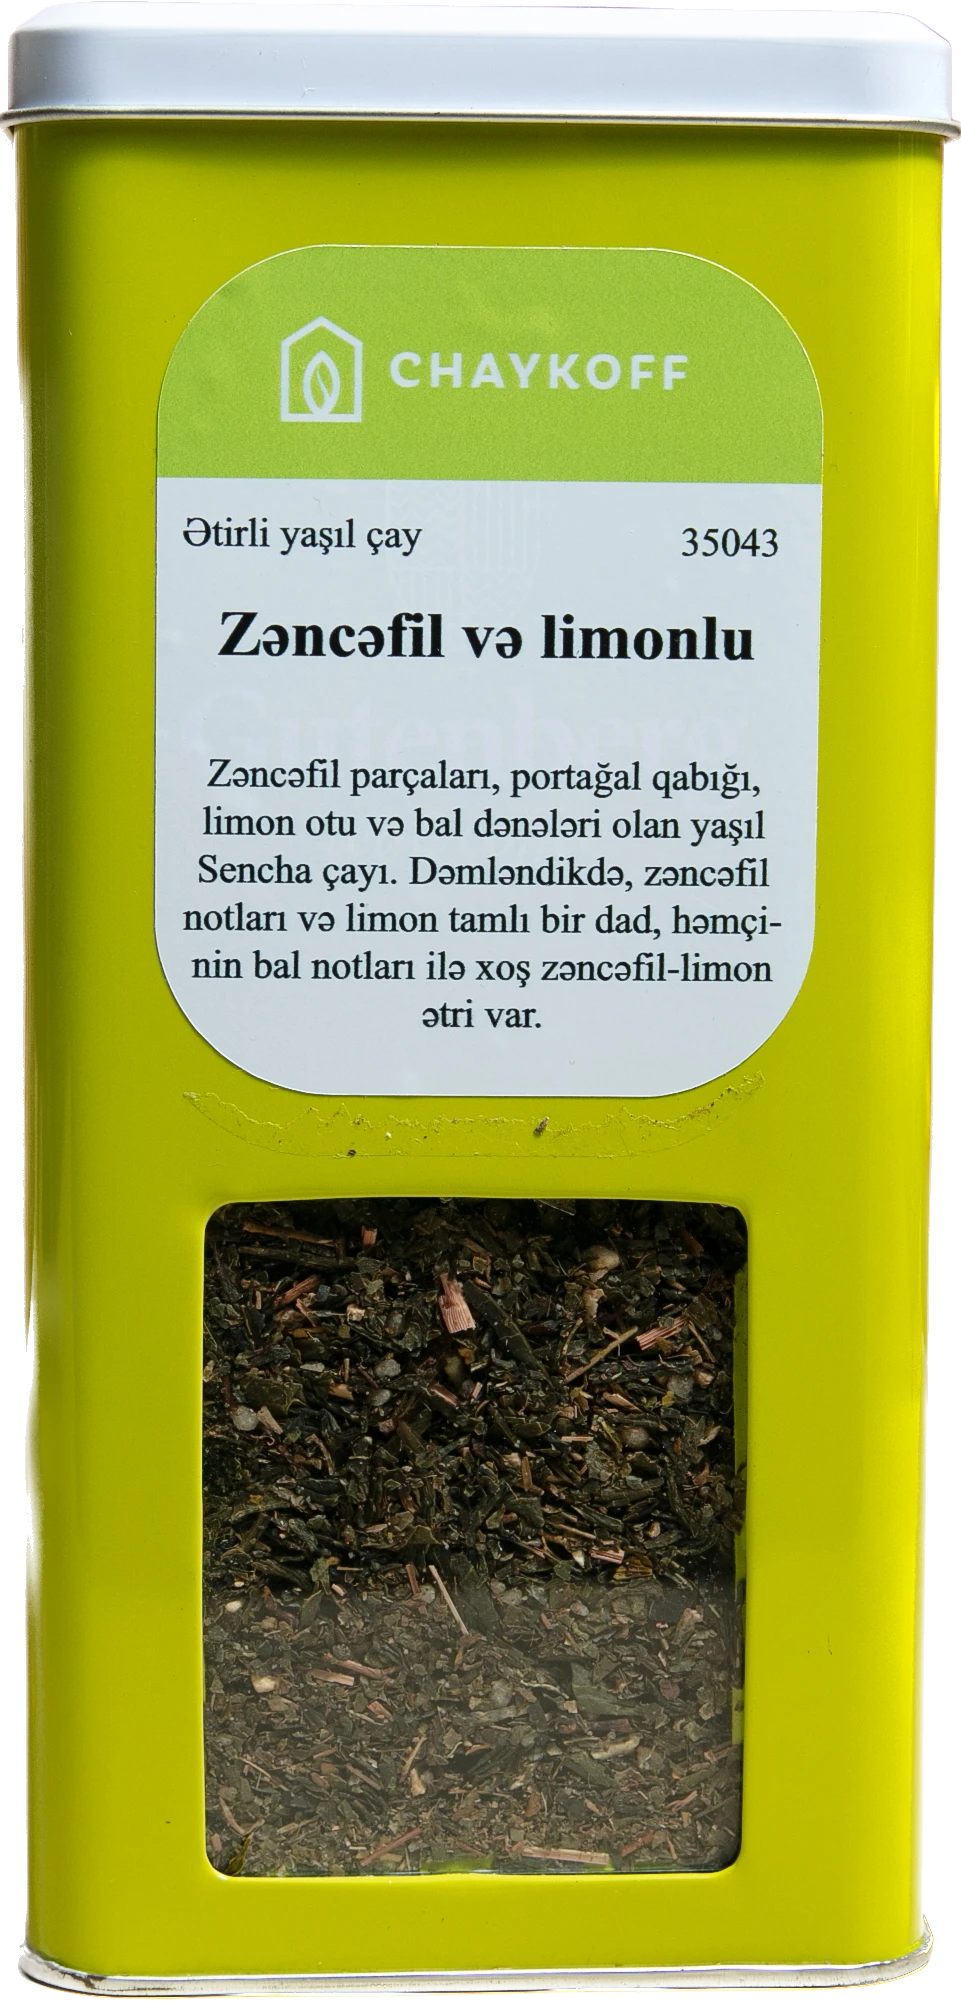 Zəncəfil Və Limonlu Ətirli Yaşil Çay (250 qr)